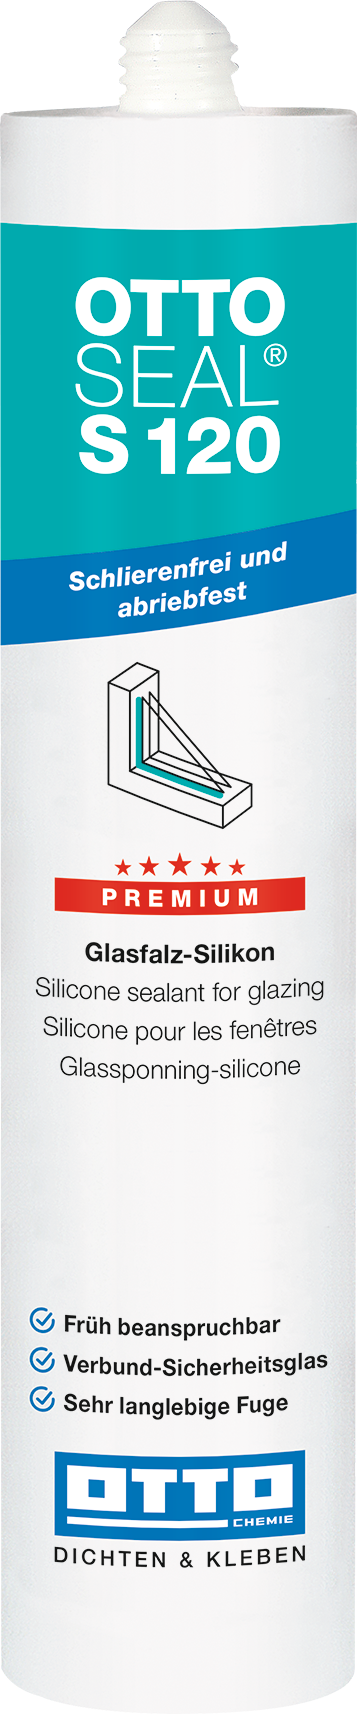 OTTOSEAL® S120 Das Premium-Glasfalz-Silikon 